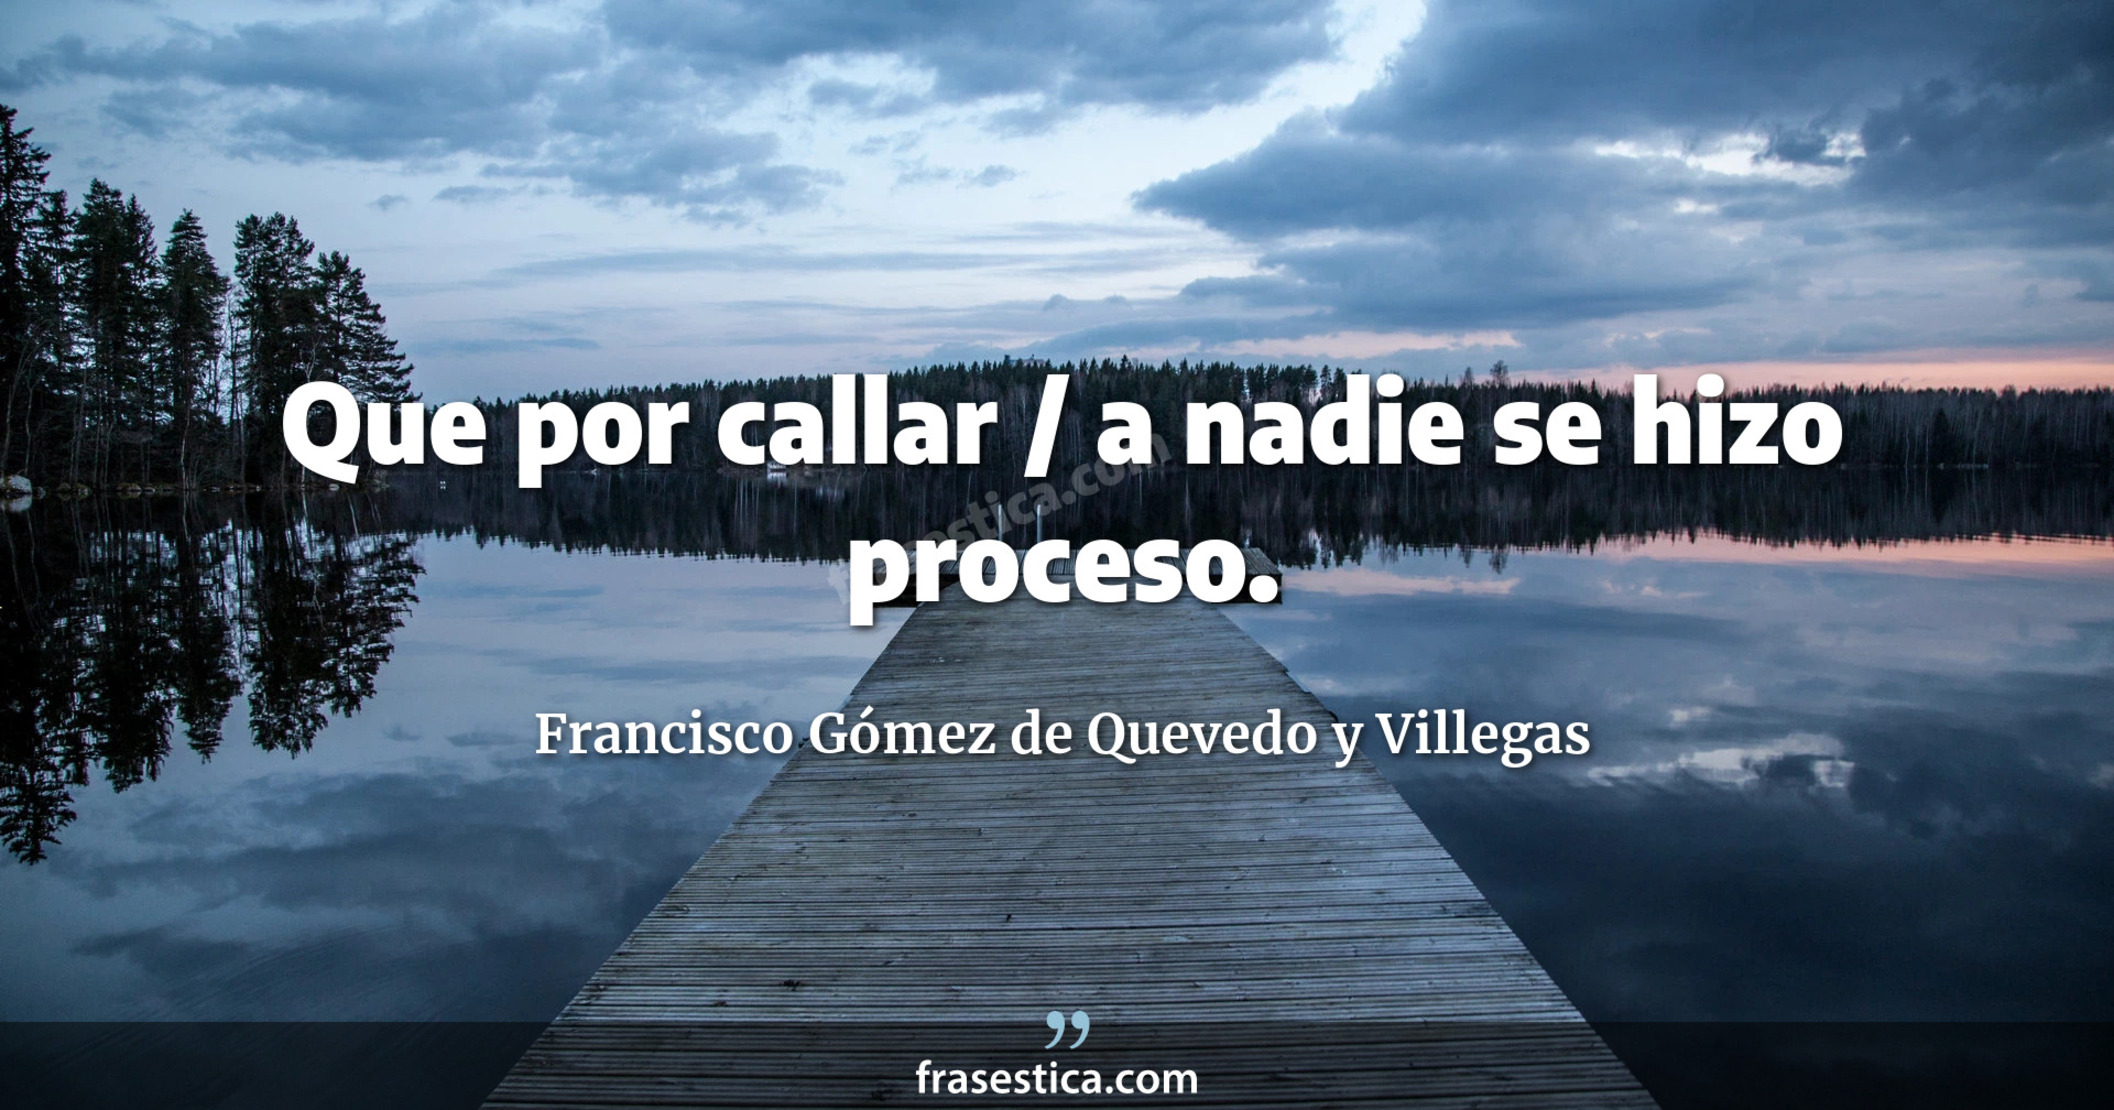 Que por callar / a nadie se hizo proceso. - Francisco Gómez de Quevedo y Villegas